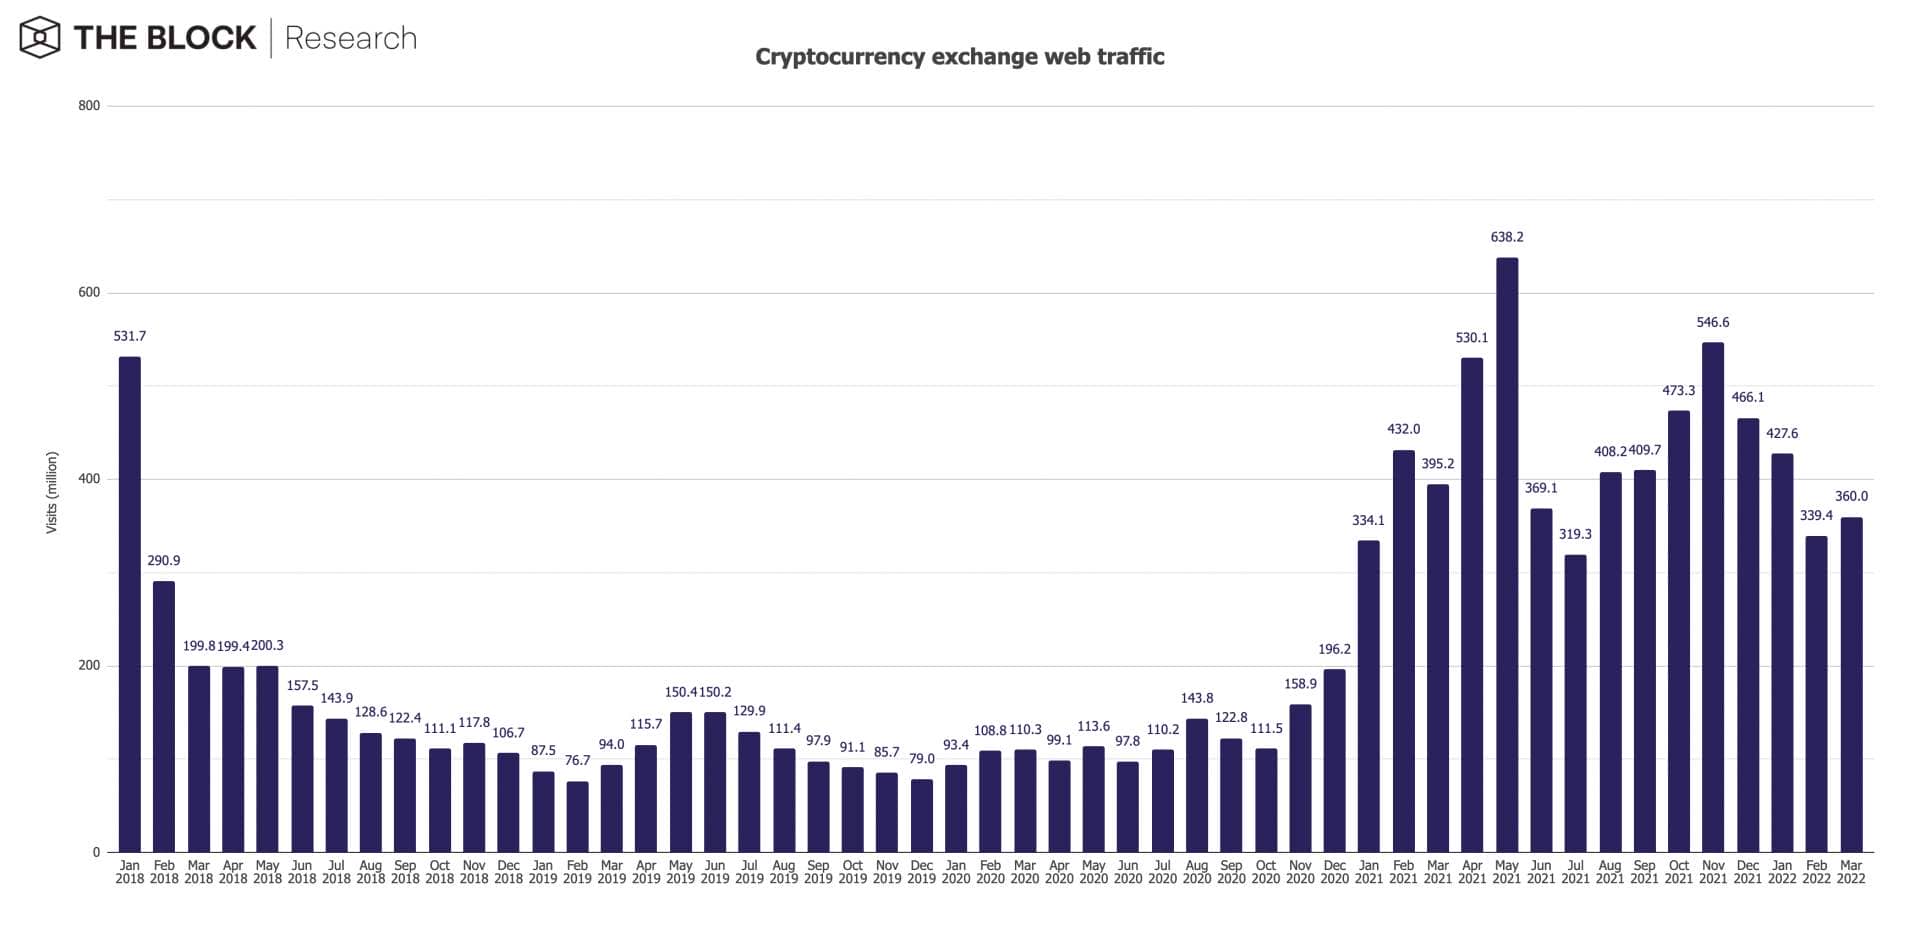 Bourses de cryptomonnaies : trafic des sites web